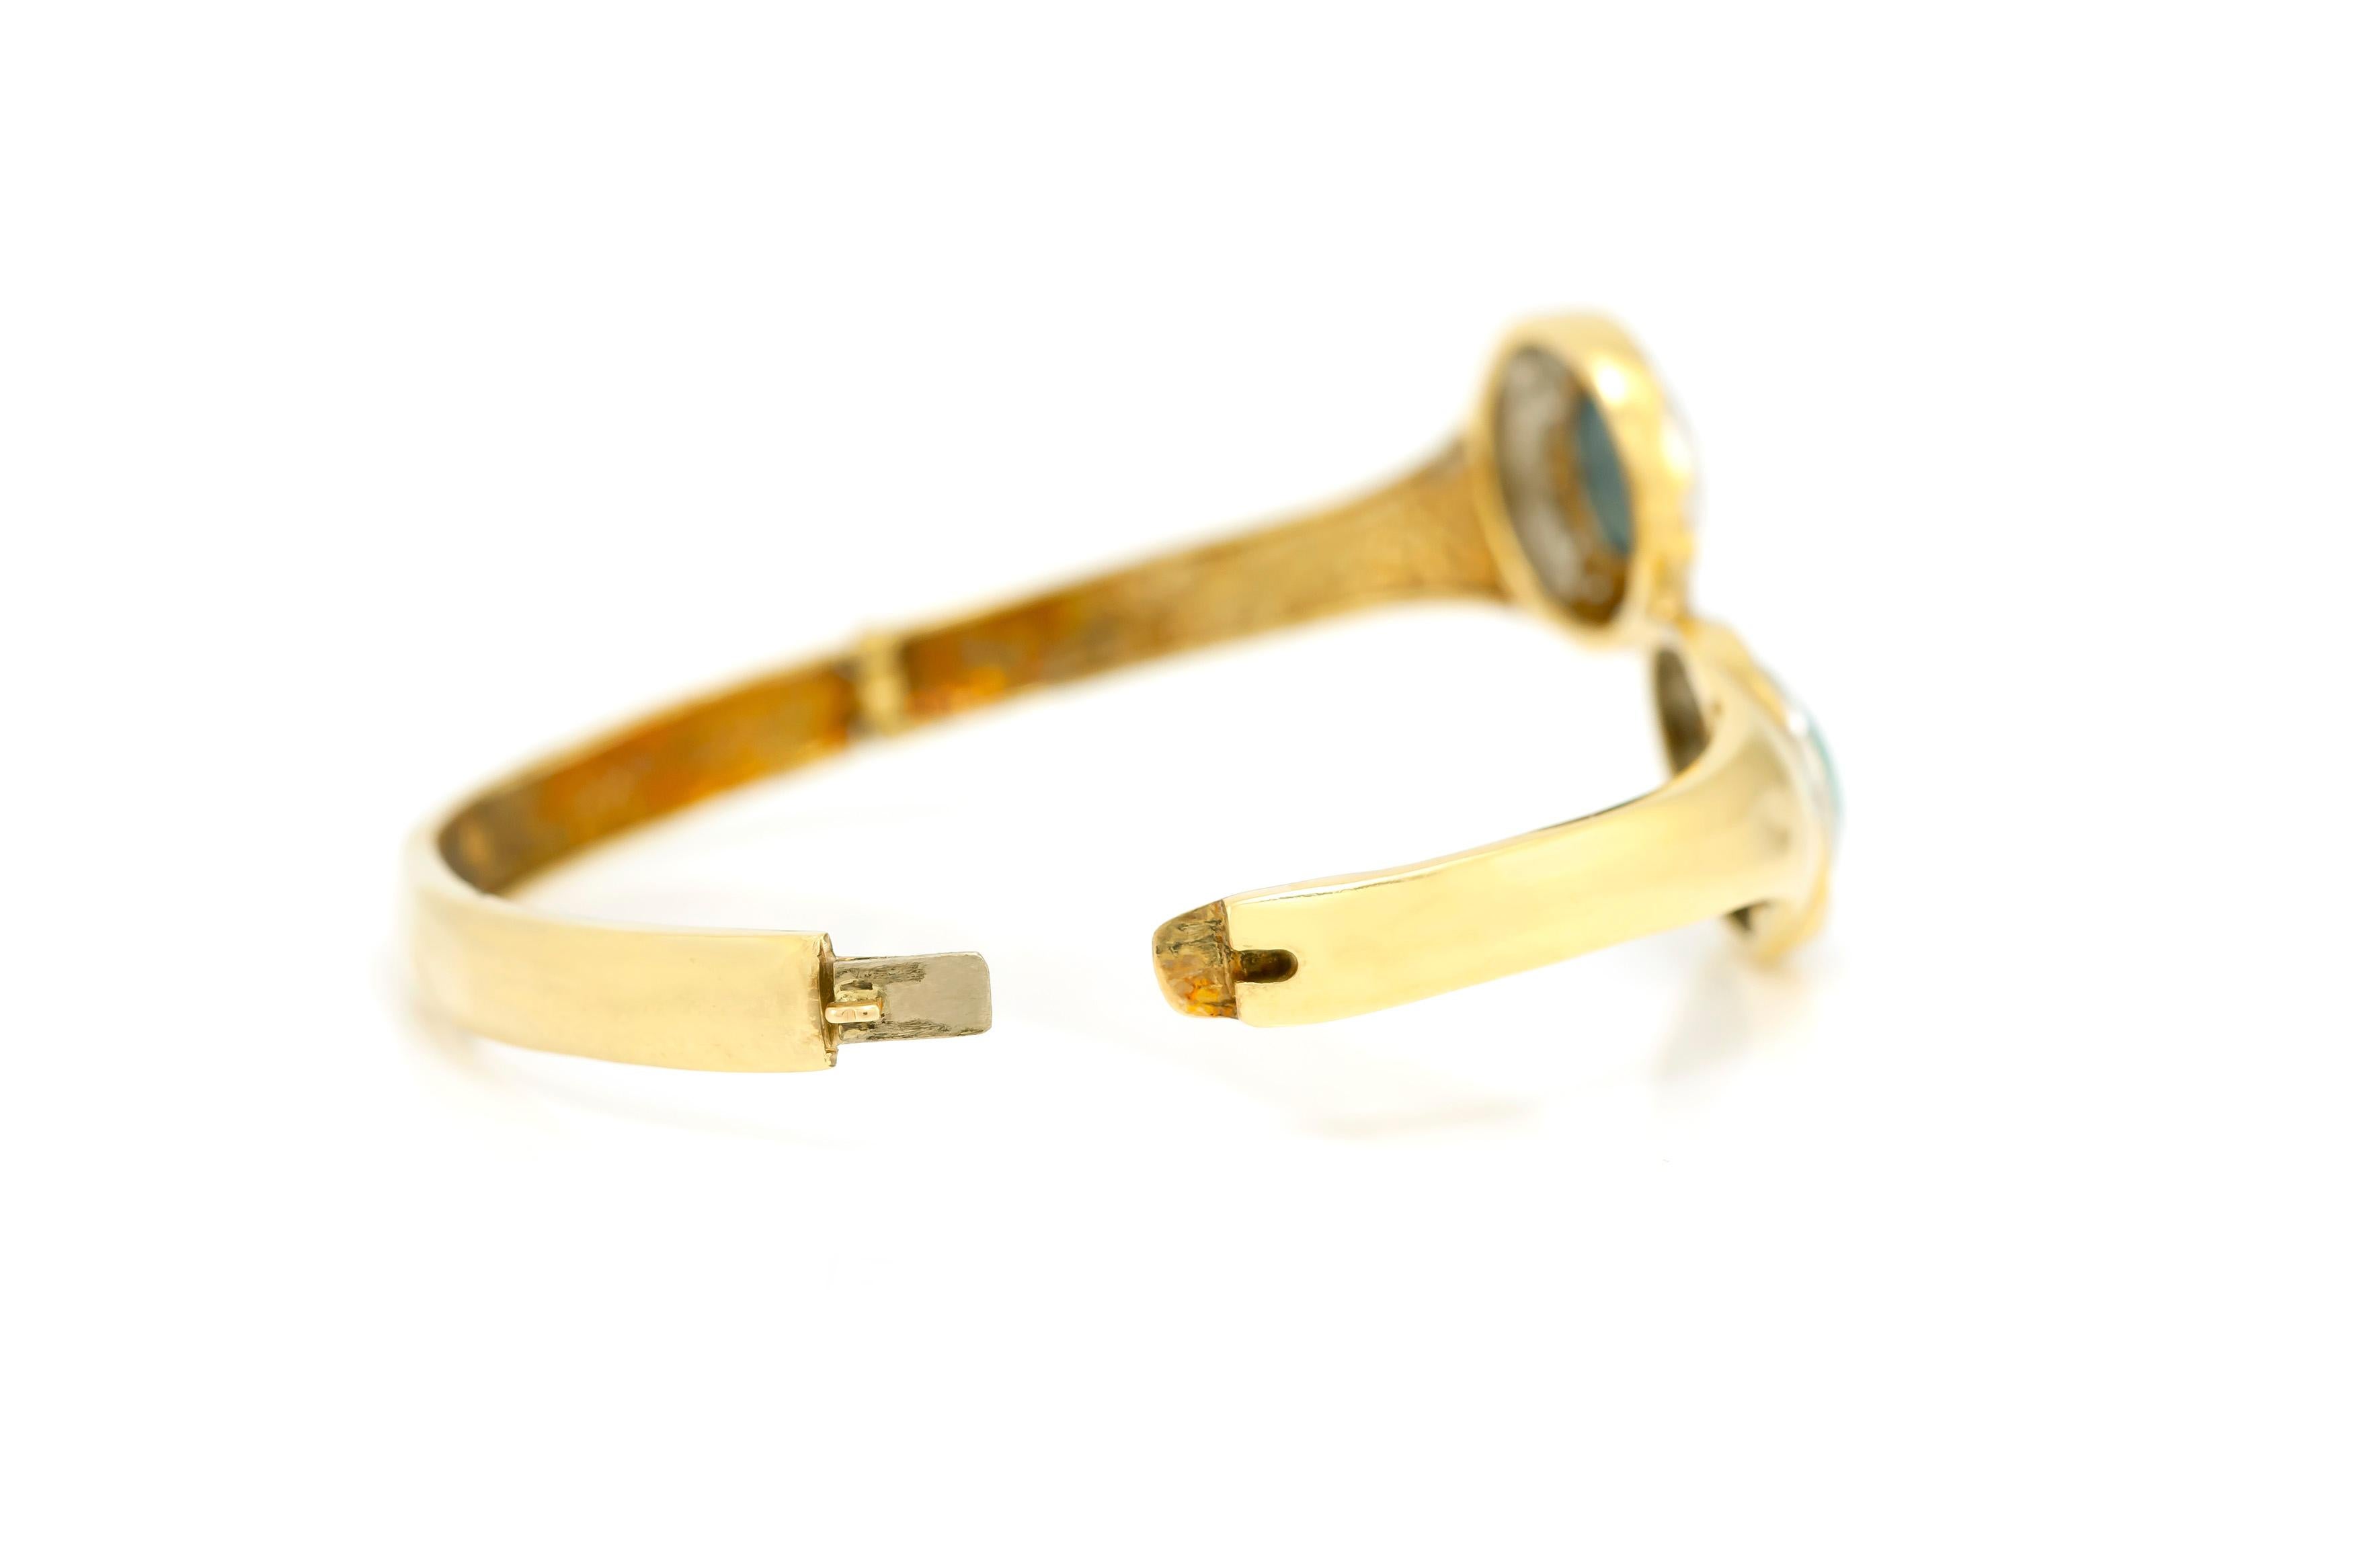 Le bracelet est finement travaillé en or jaune 14k avec deux magnifiques opales et diamants pesant approximativement 1,40 carat au total.
